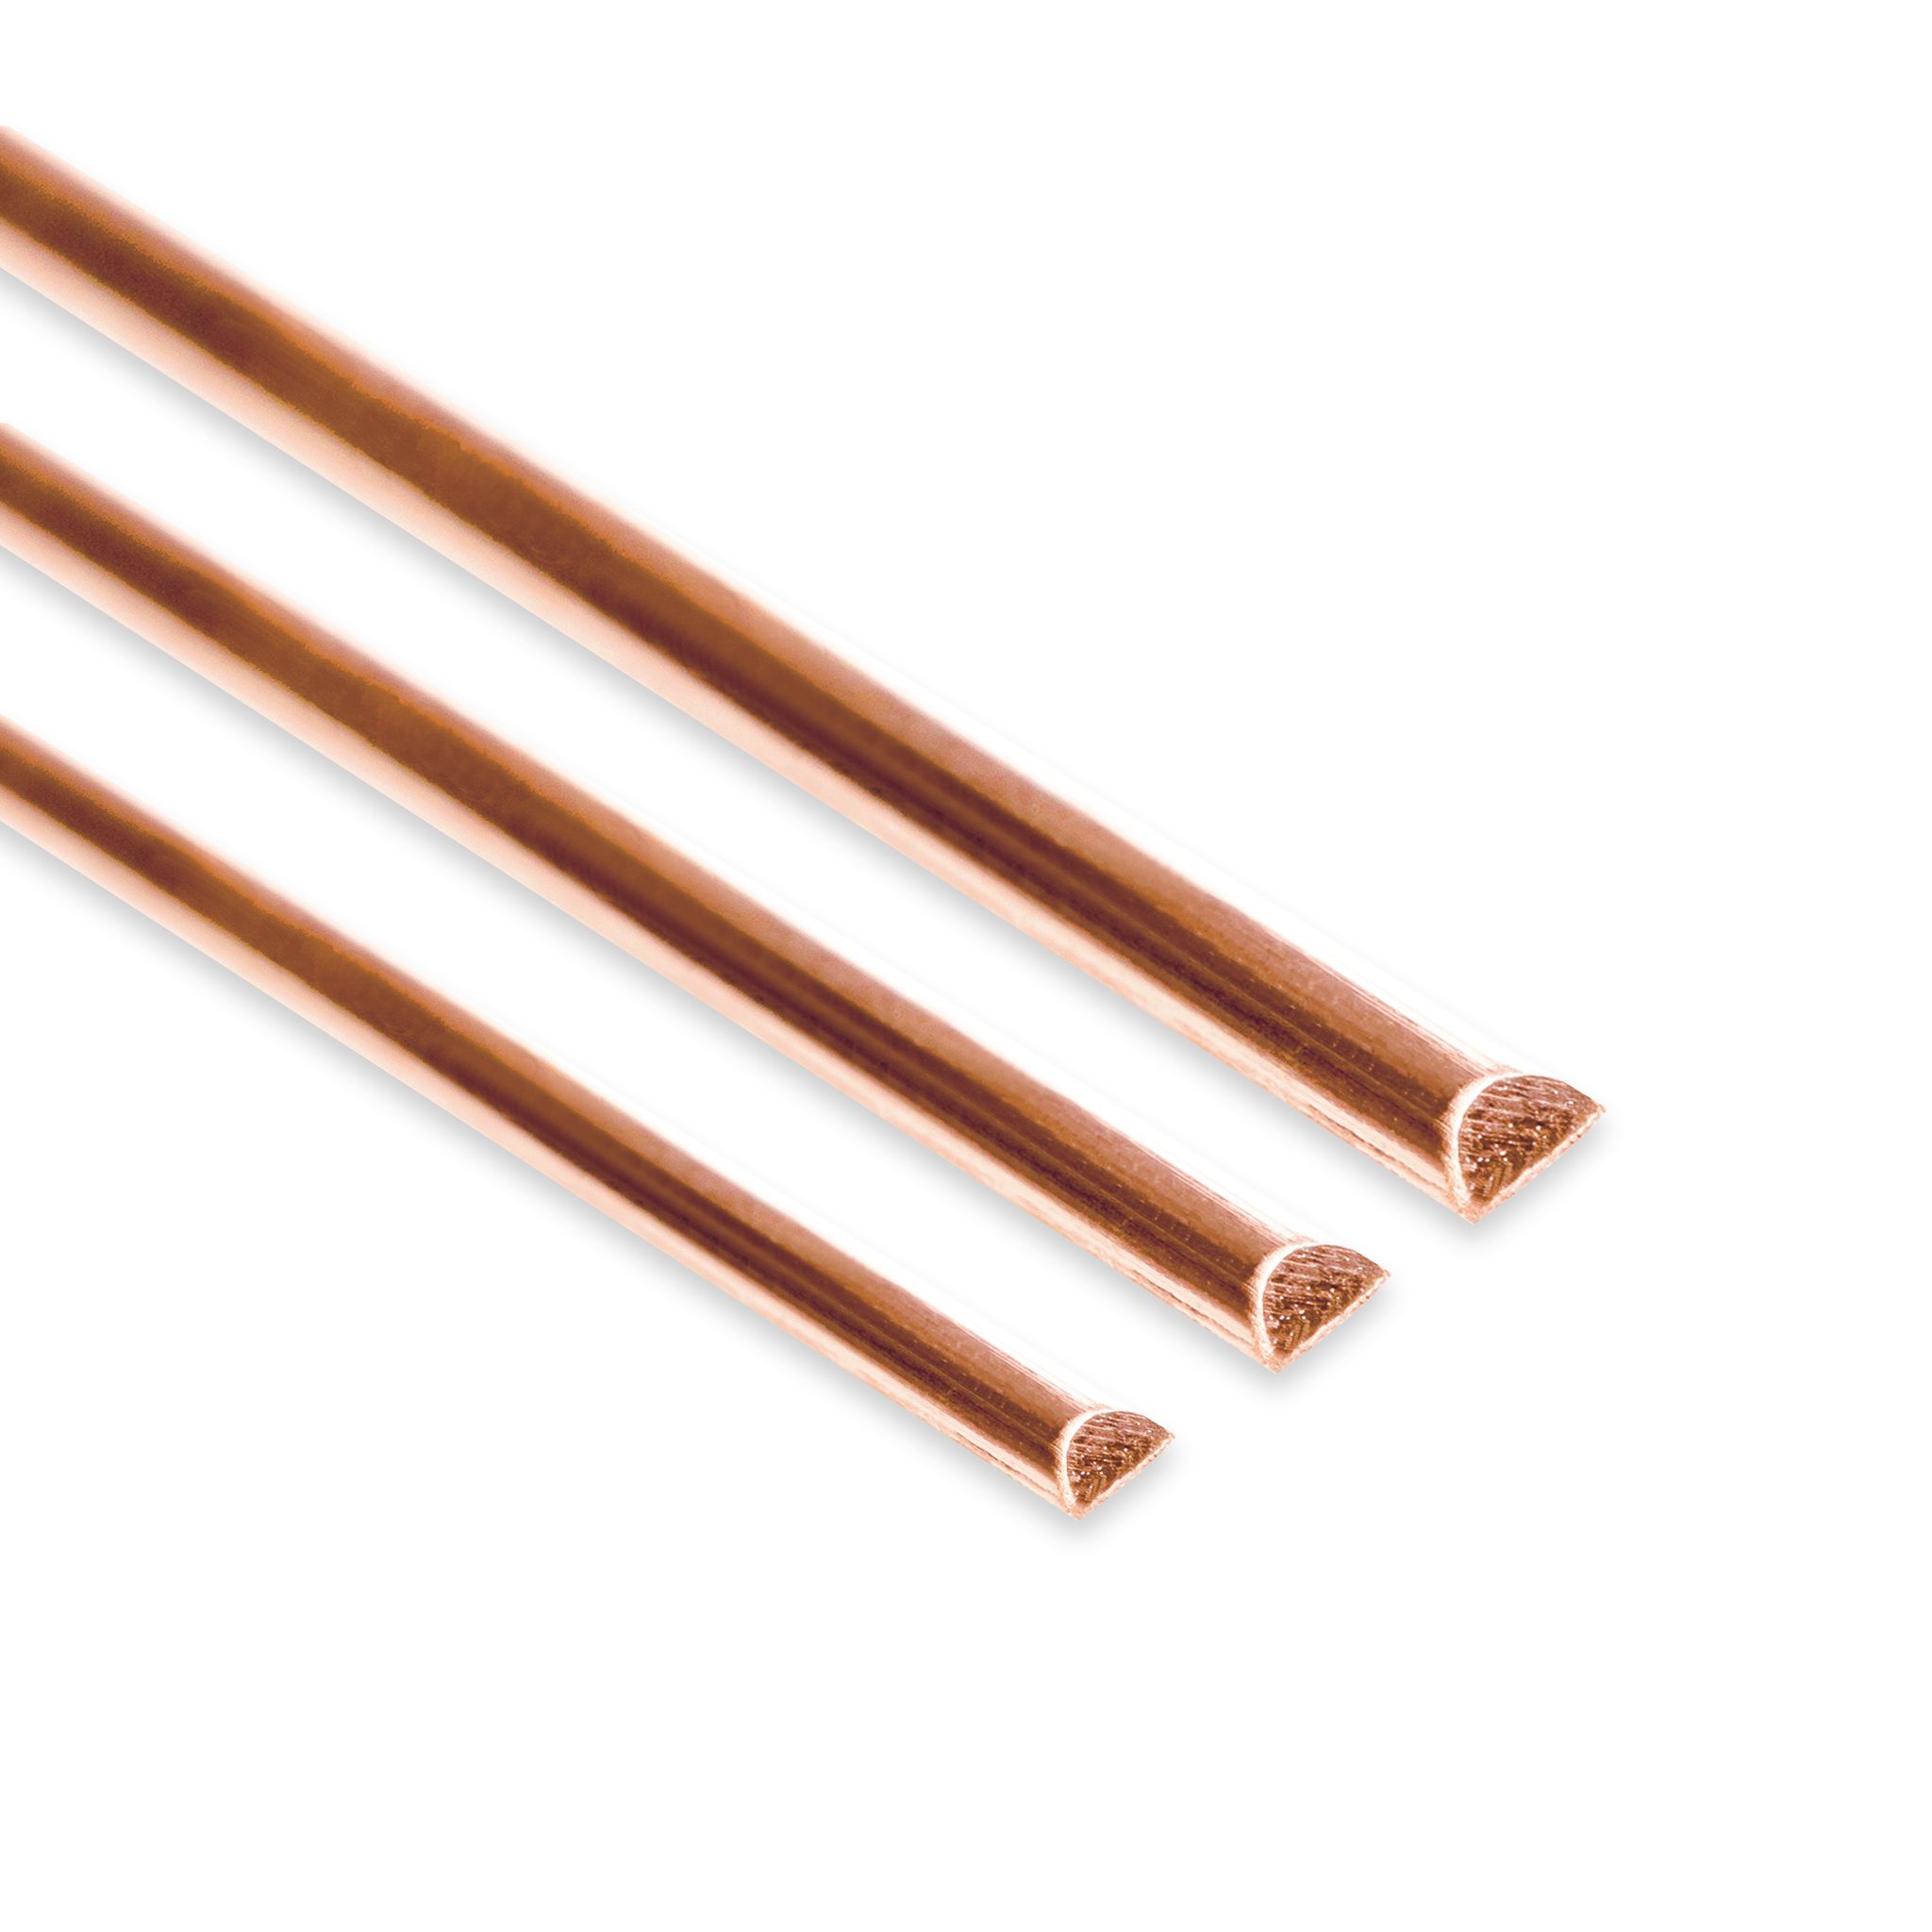 2 Lbs. Bare Copper Wire for Crafts - Half Hard ( 99.9% Pure Copper)